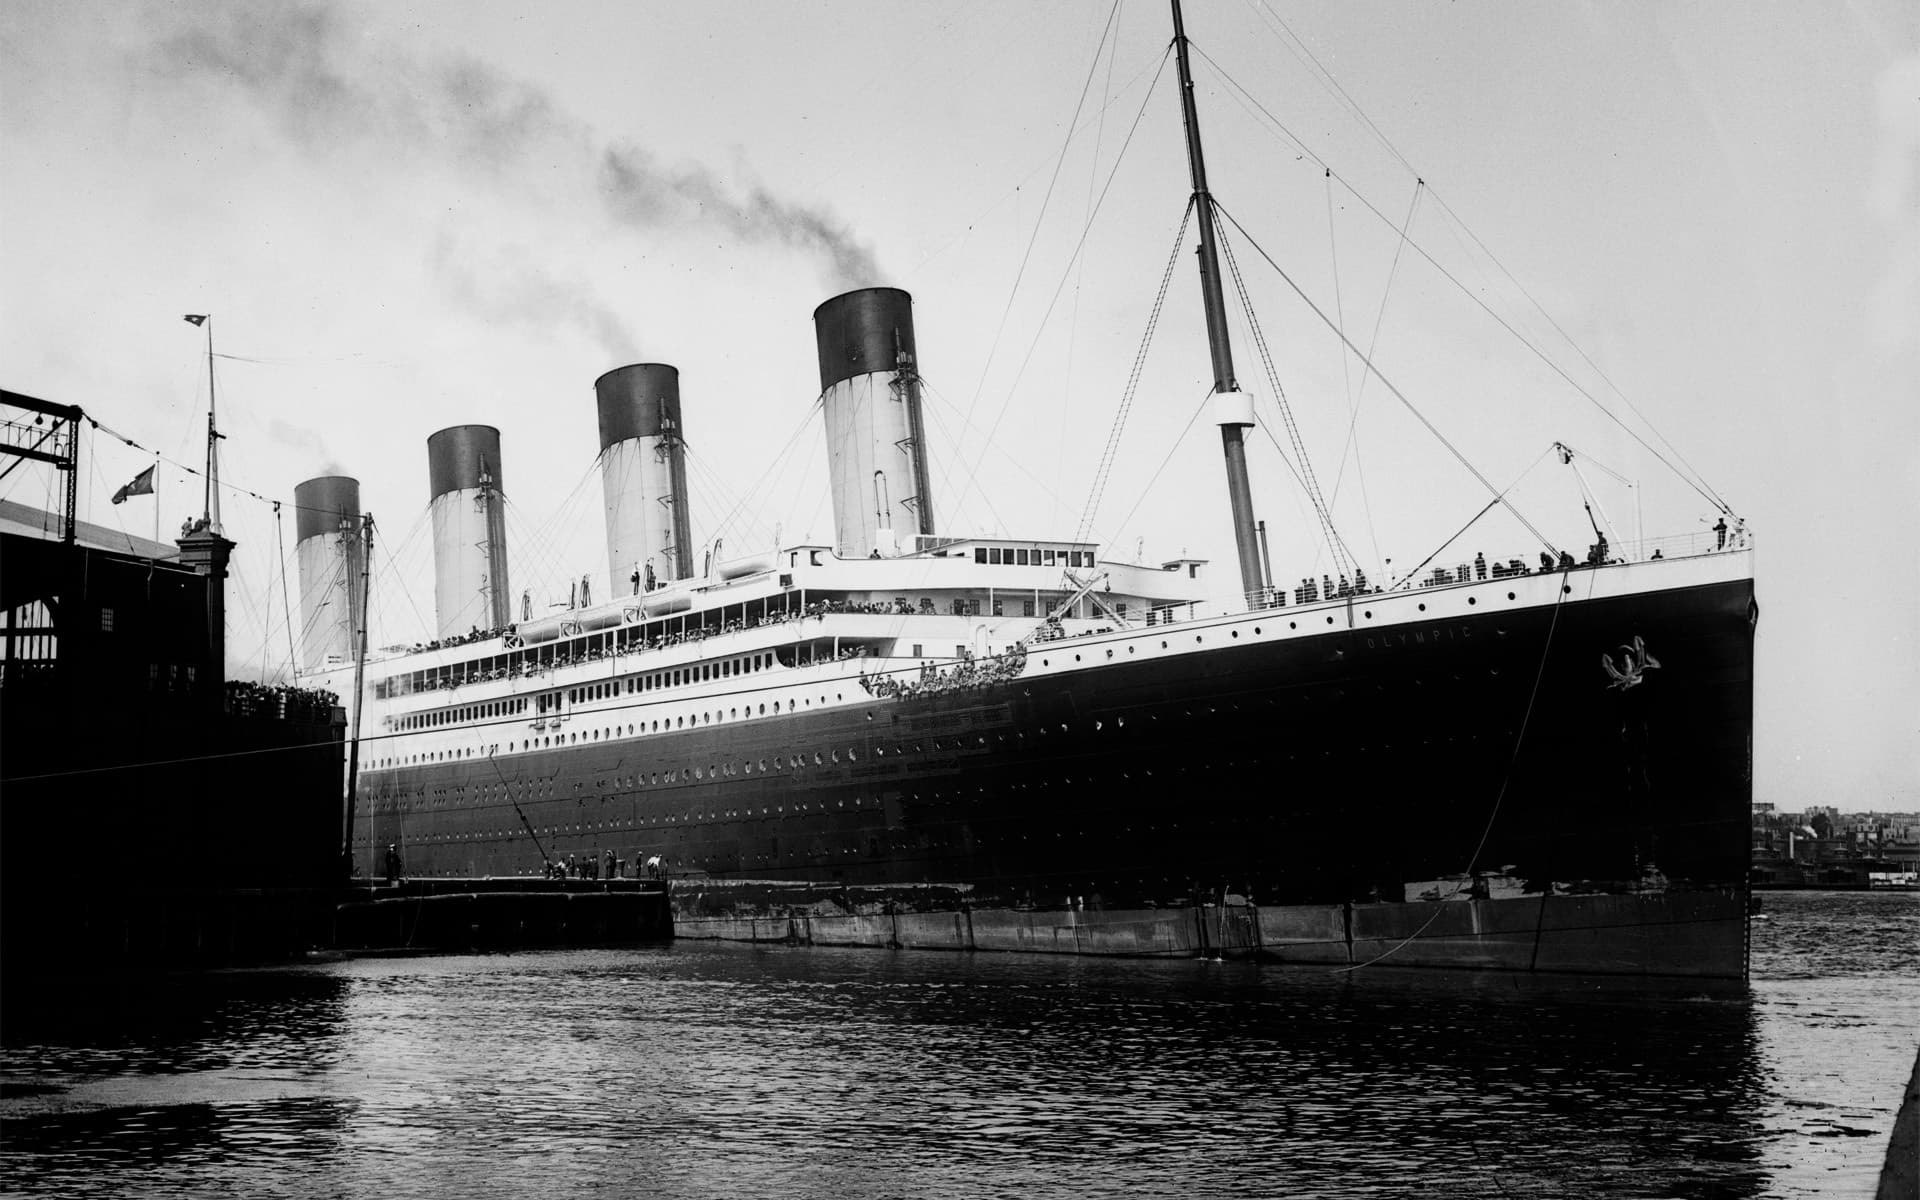 Похожи или нет? Как нам показали пассажиров «Титаника», и как они выглядели на самом деле